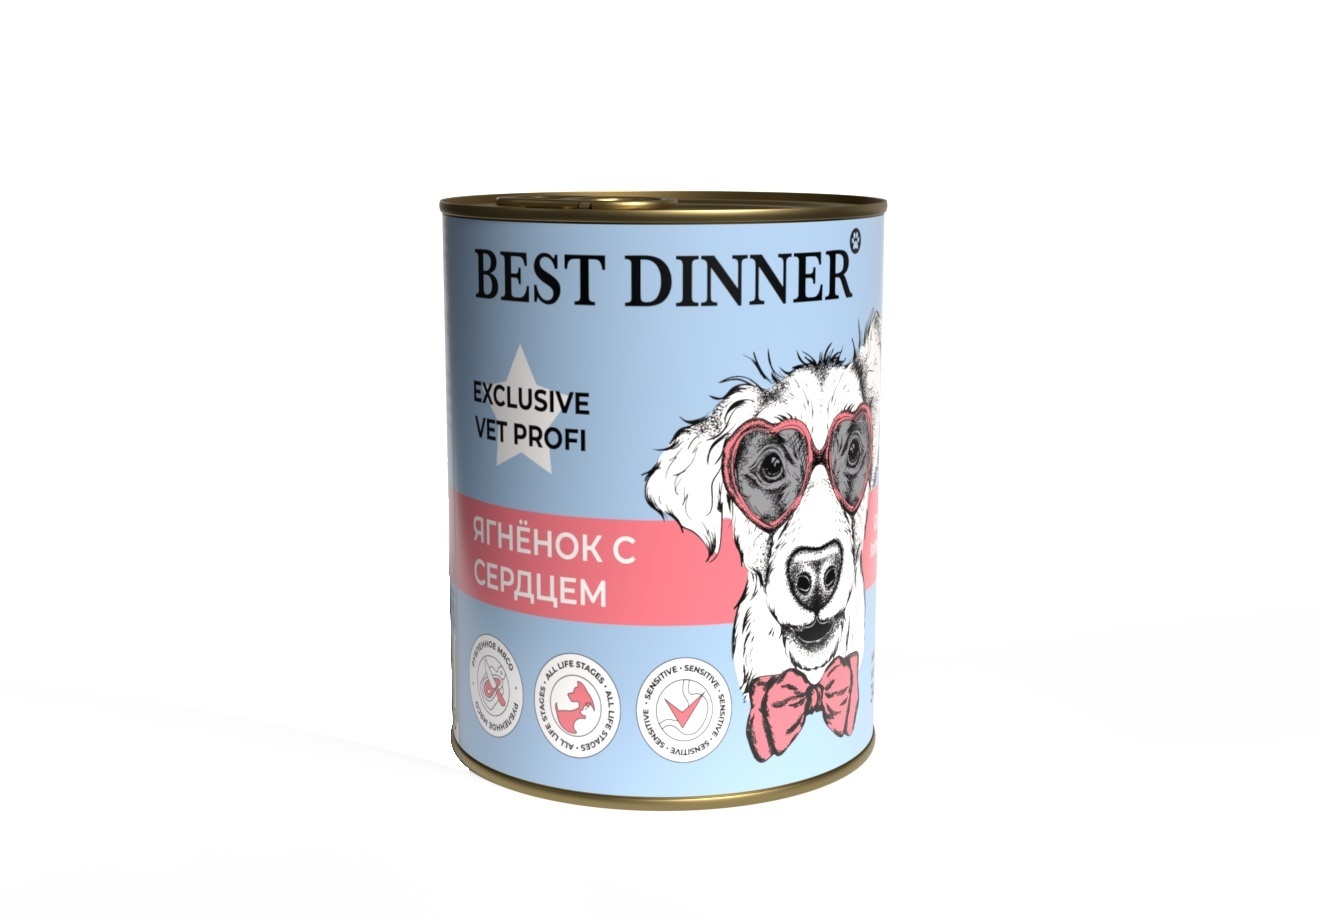 Best Dinner Best Dinner консервы Ягненок с сердцем для собак с чувствительным пищеварением (340 г) best dinner best dinner гипоаллергенные консервы индейка и кролик для собак всех пород 340 г